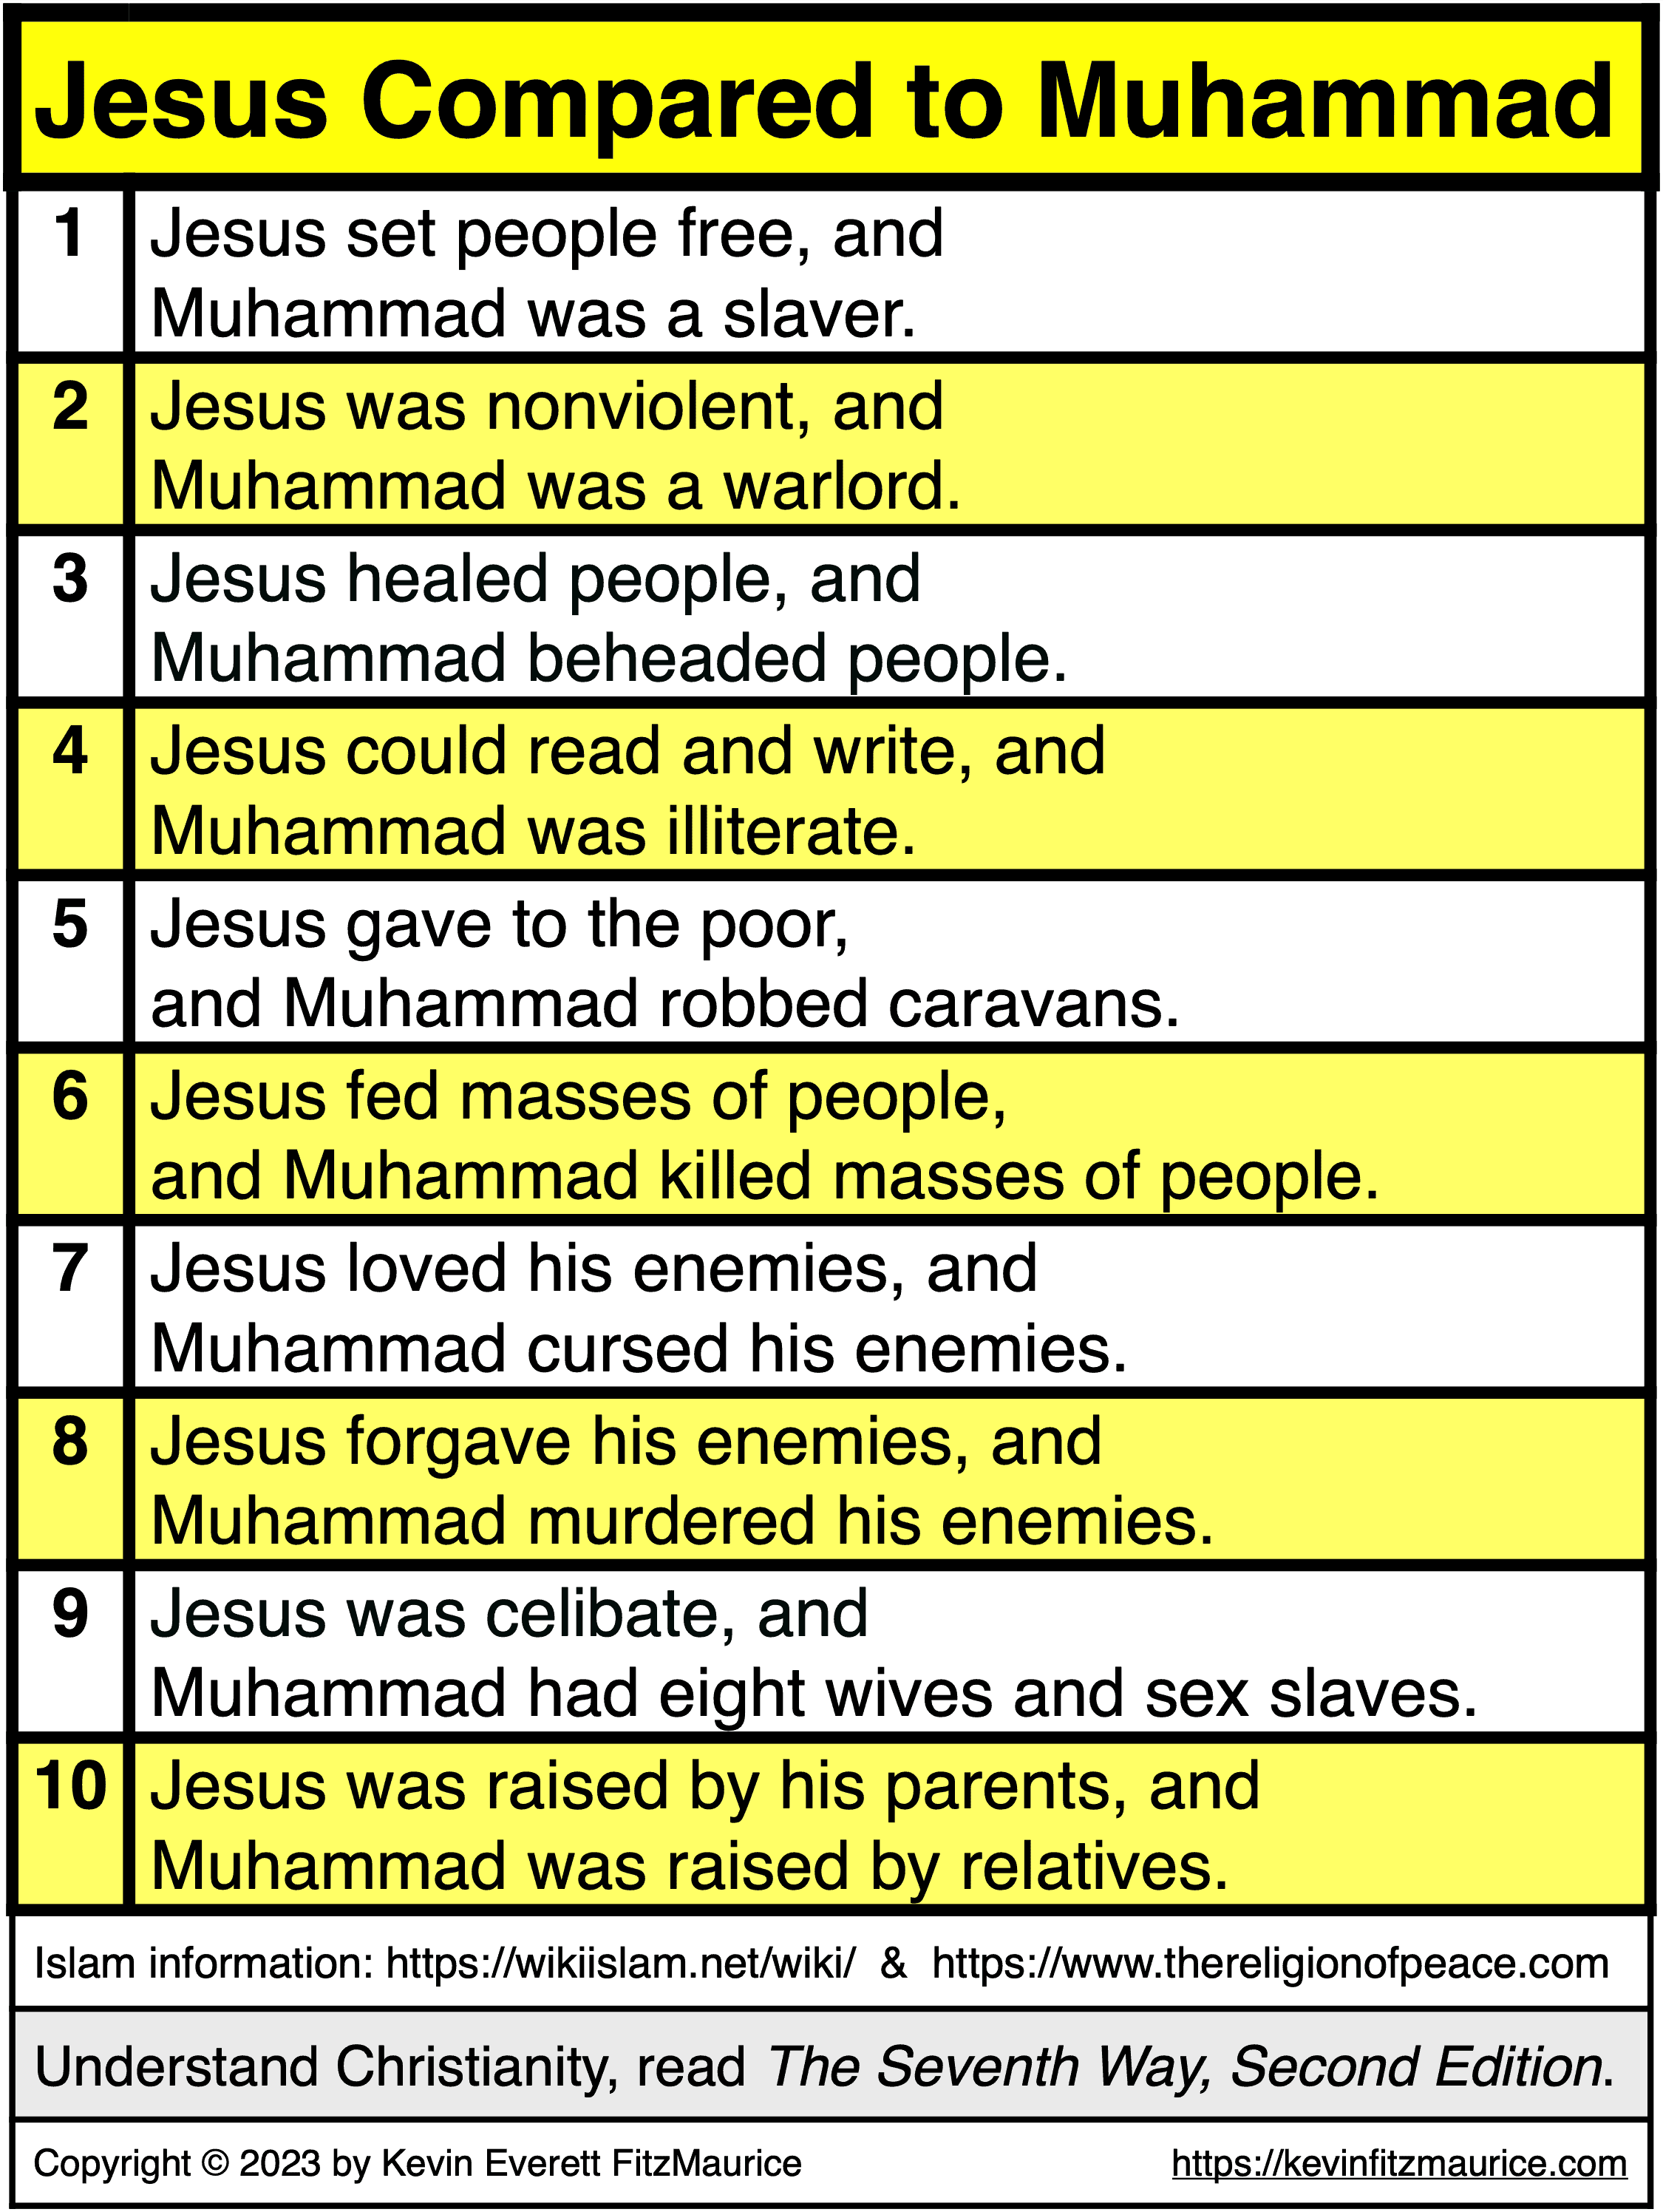 Jesus versus Muhammad